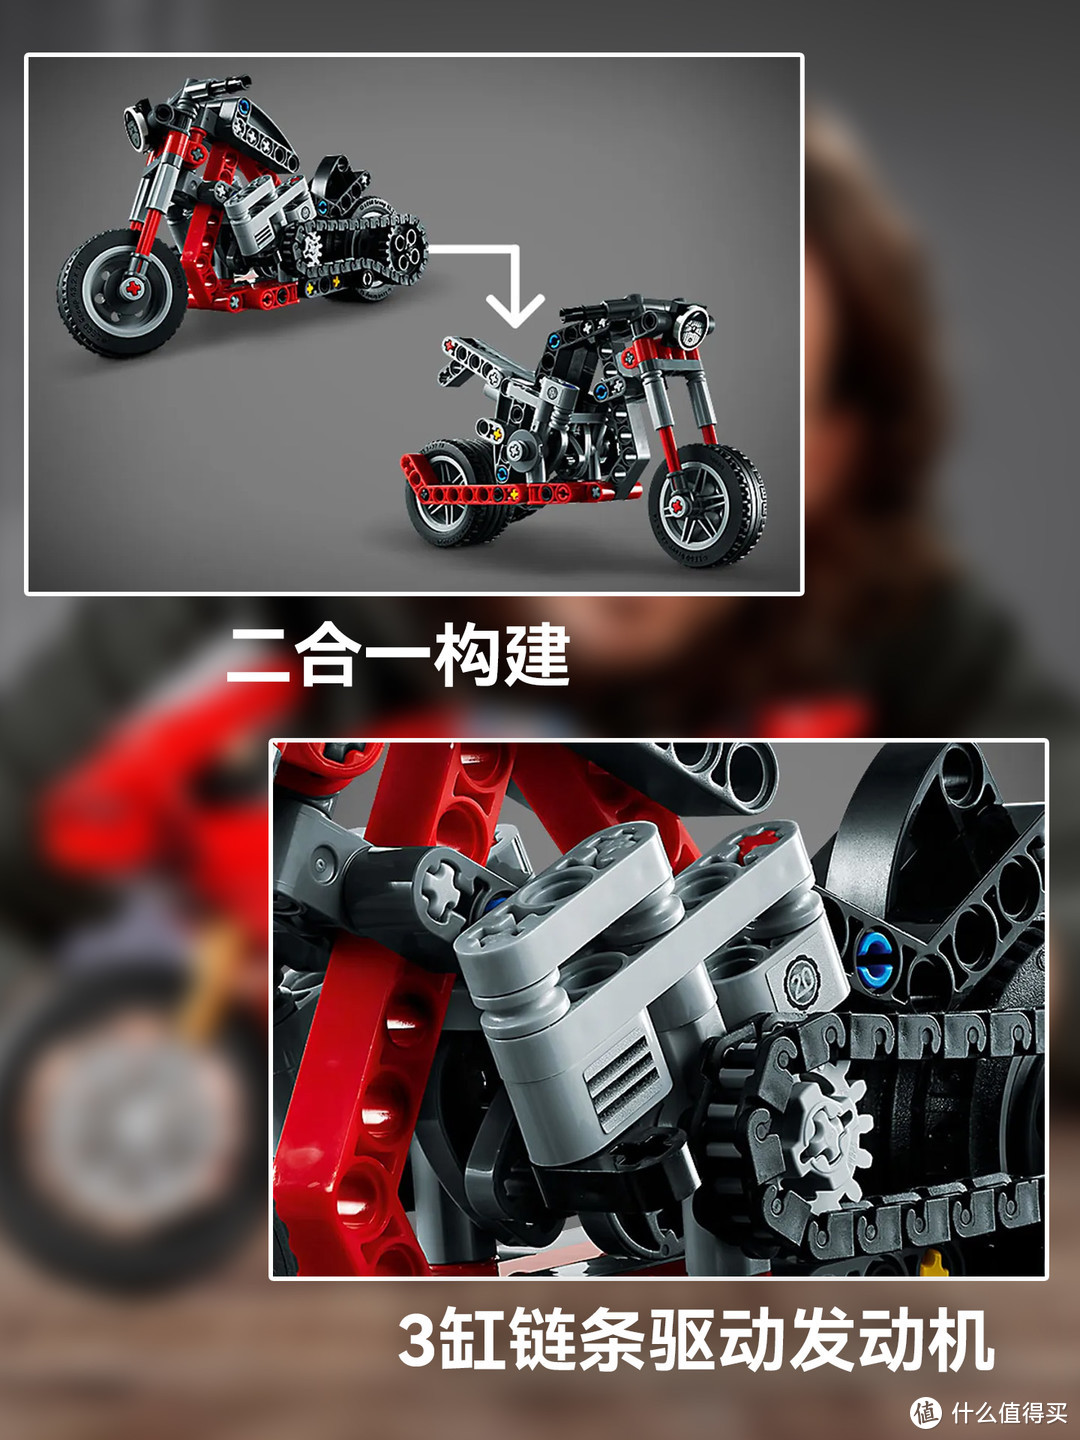 即将绝版的2款机械组摩托车❗